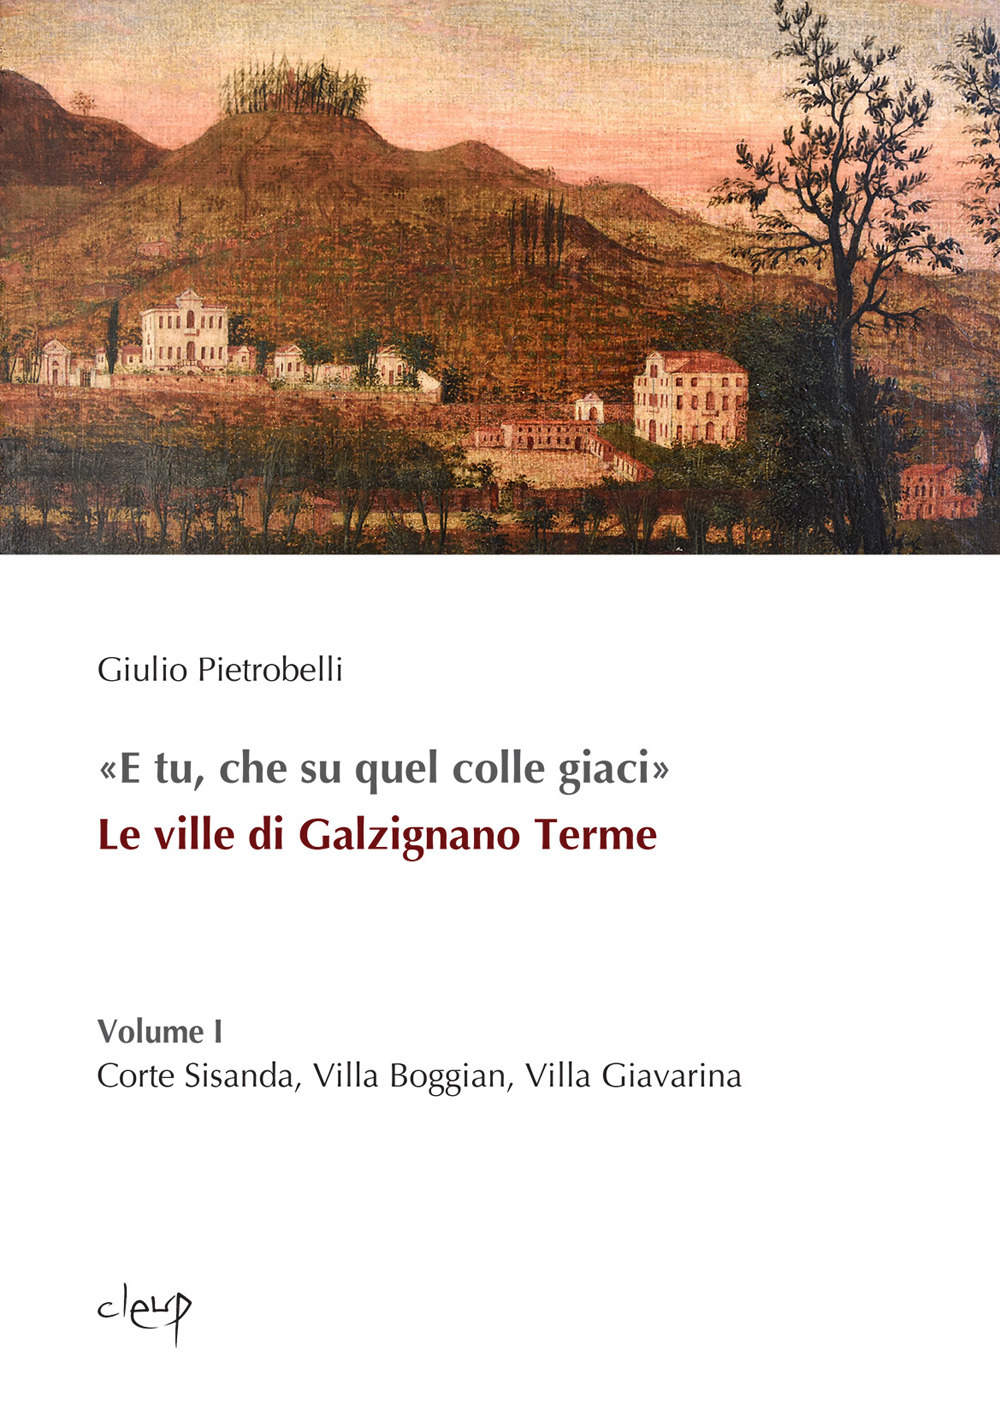 «E tu, che su quel colle giaci». Le ville di Galzignano Terme. Vol. 1: Corte Sisanda, Villa Boggian, Villa Giavarina